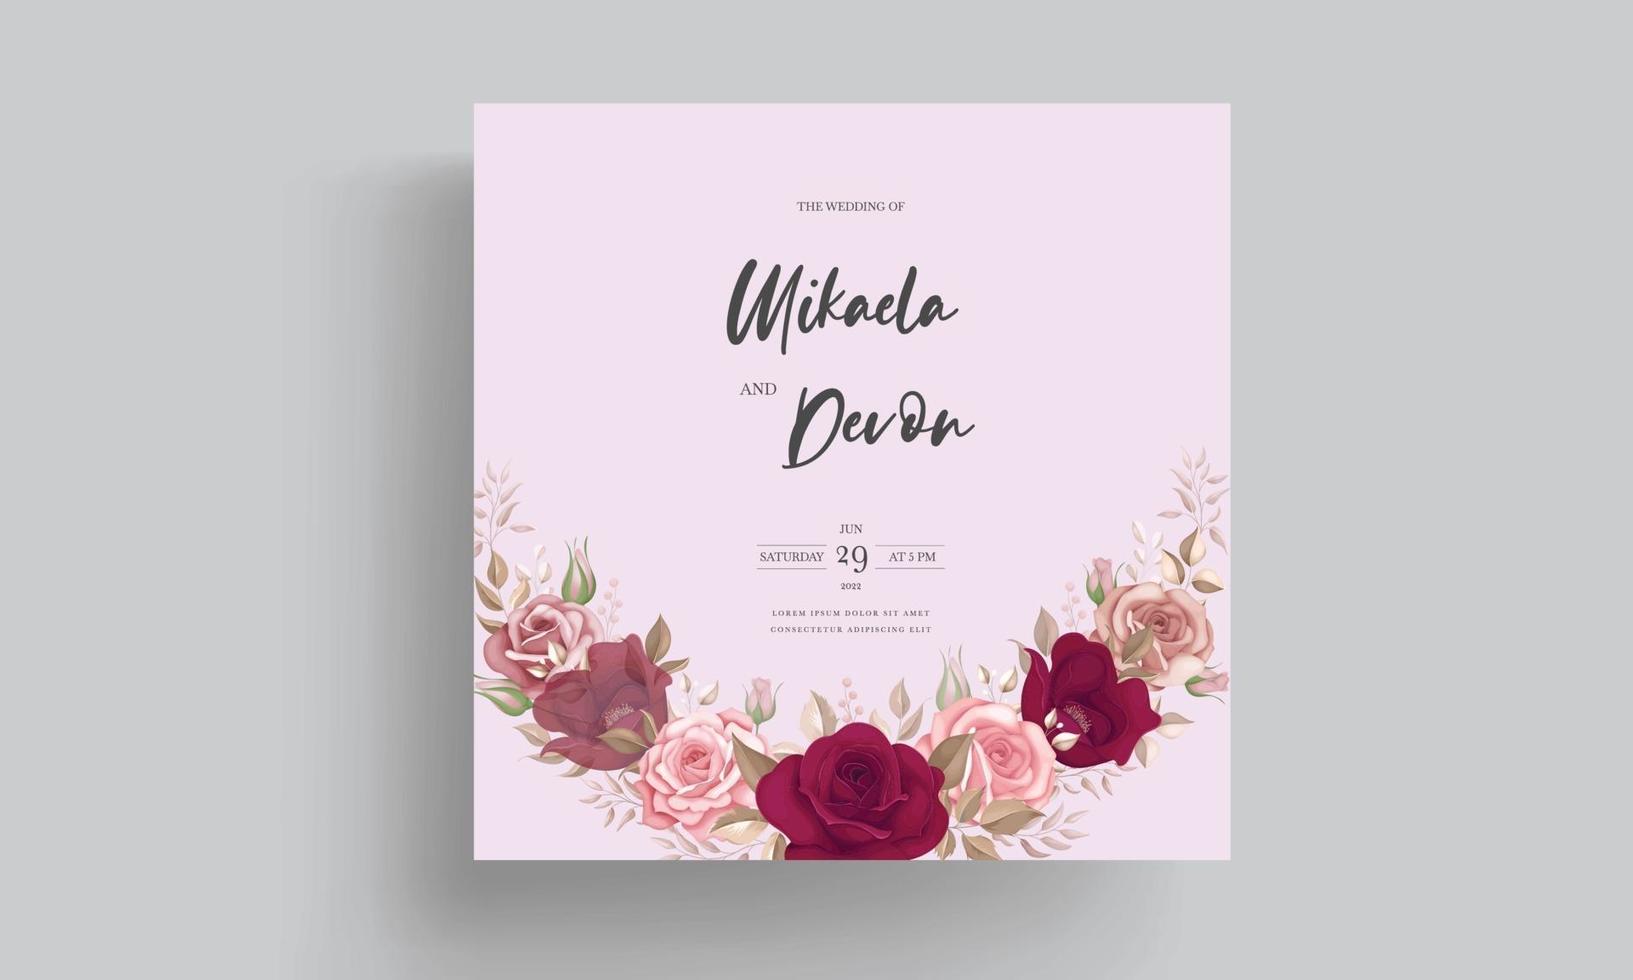 elegant bröllopsinbjudningskort med vackra rödbruna rosor vektor